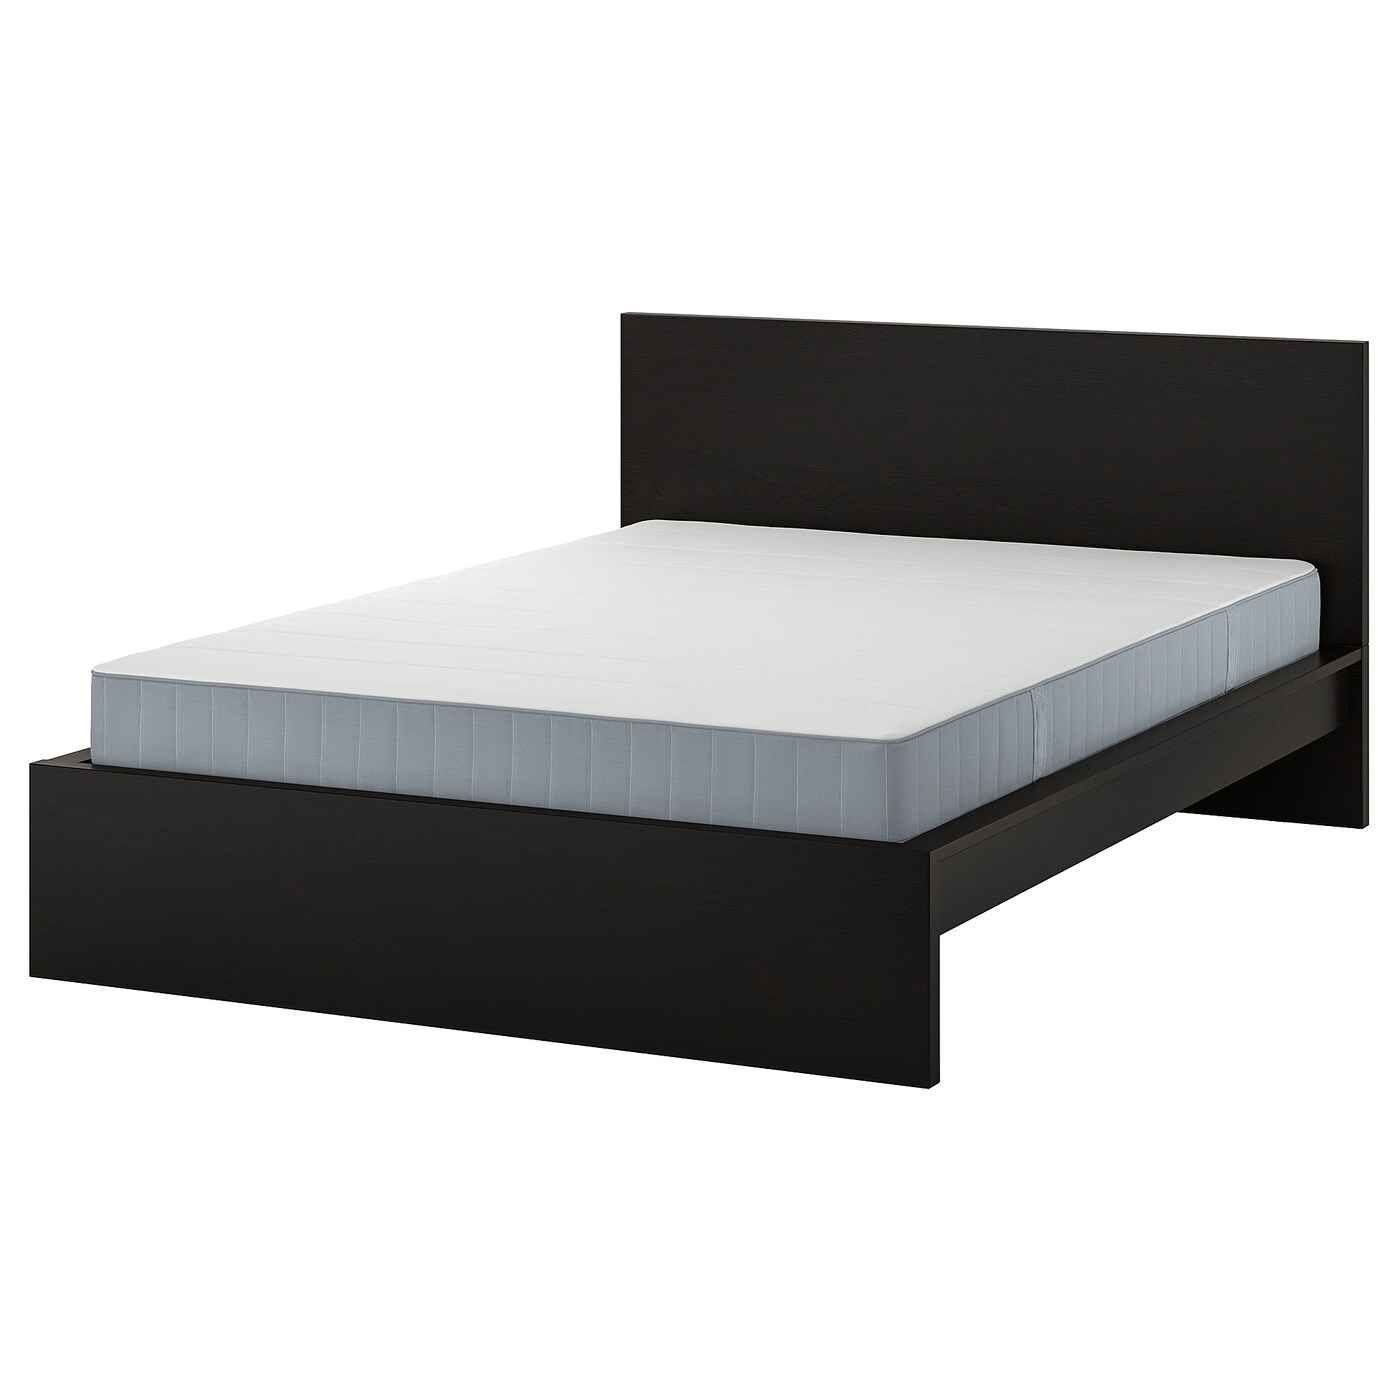 Кровать - IKEA MALM, 200х160 см, жесткий матрас, черный, МАЛЬМ ИКЕА